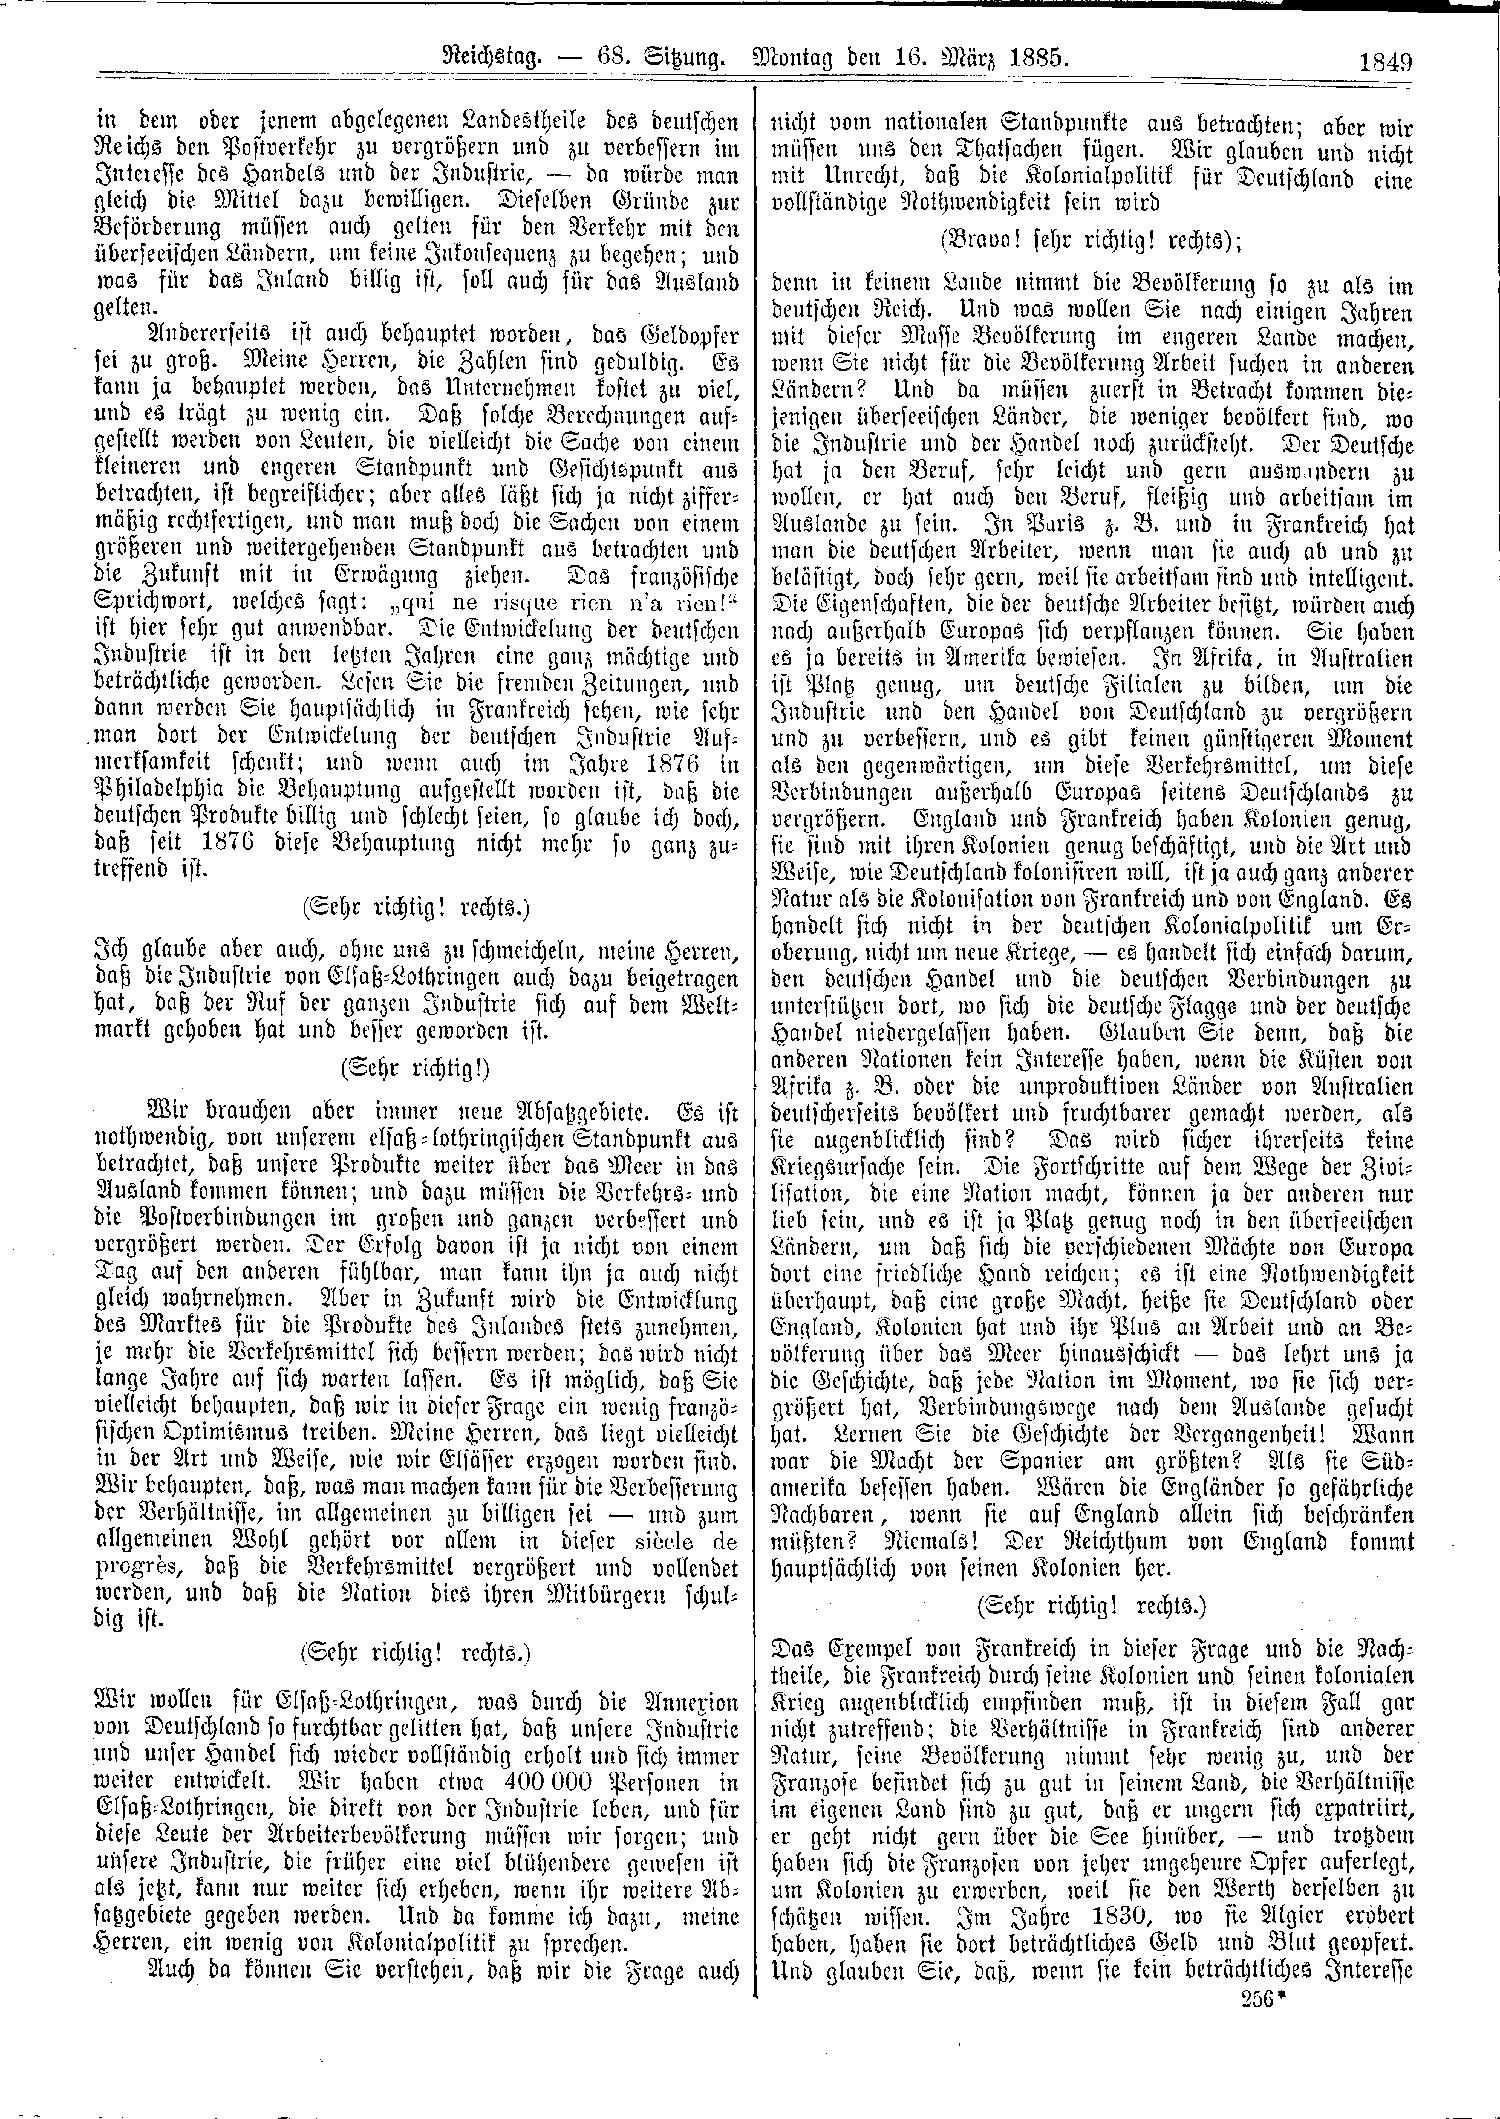 Scan der Seite 1849